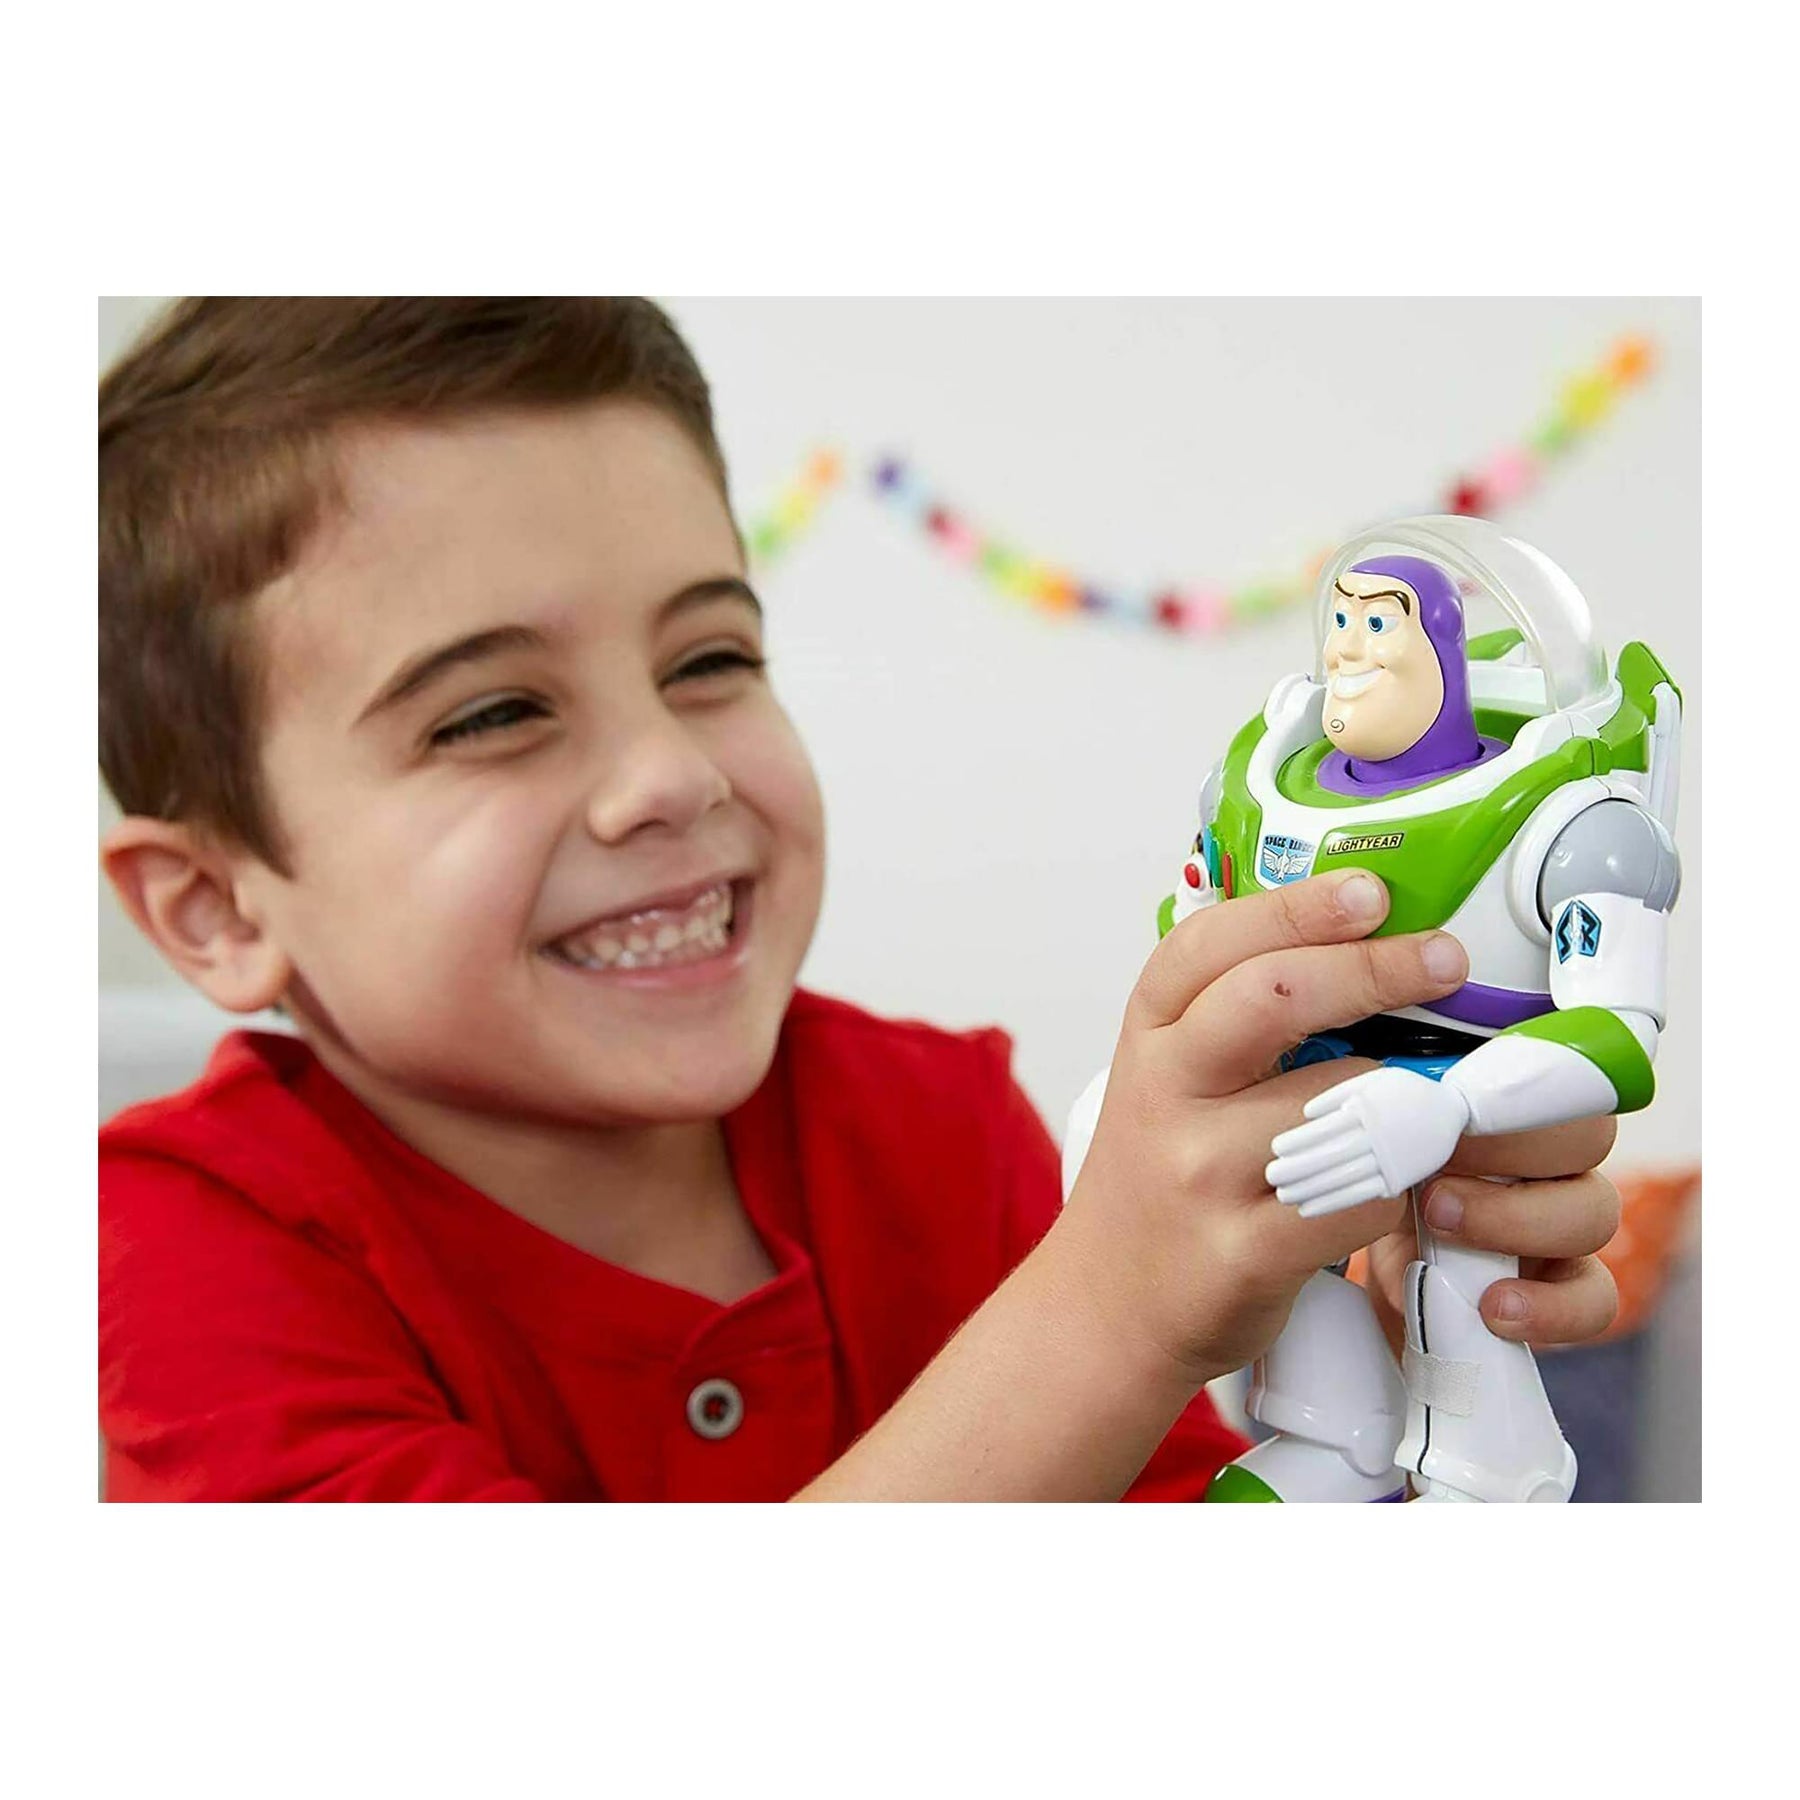 Disney Toy Story Take Aim Buzz Lightyear 7 Inch Electronic Figure